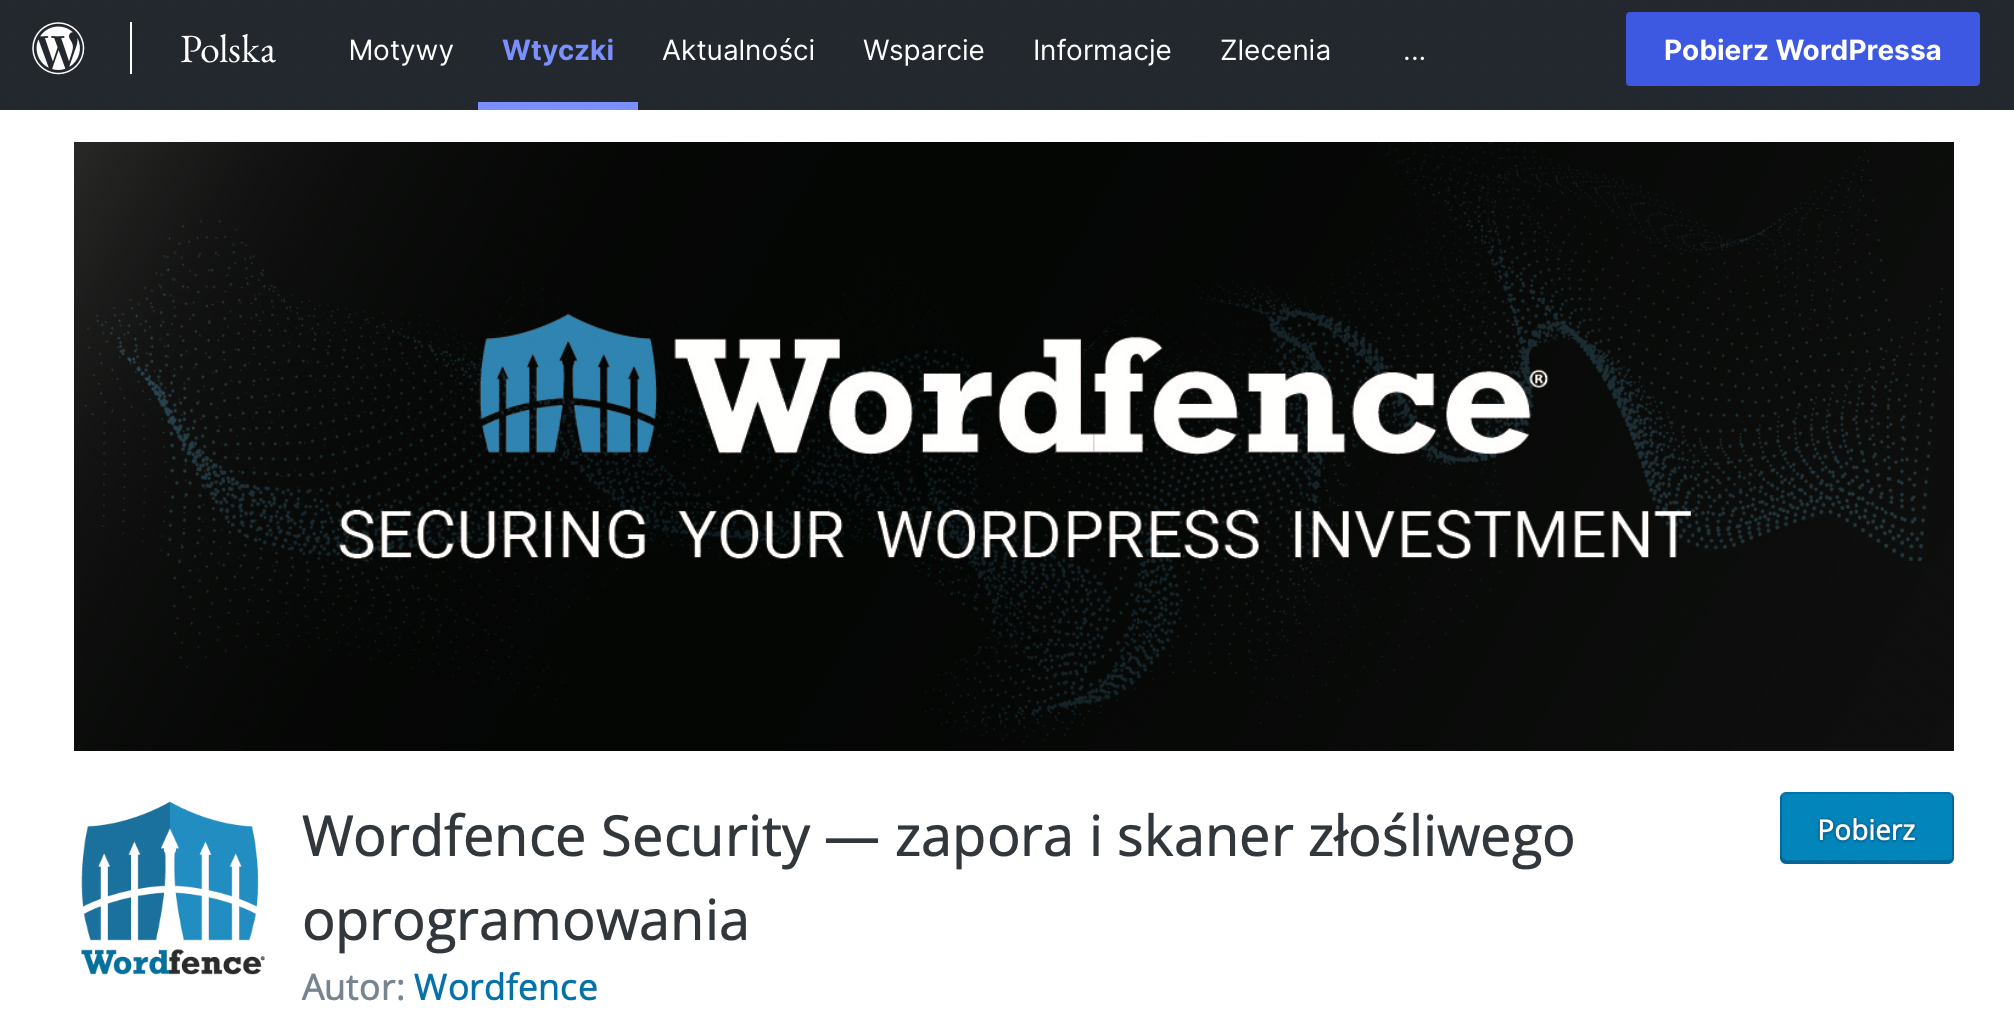 Usuwanie wirusów WordPress - analiza z Wordfence Security (https://pl.wordpress.org/plugins/wordfence/).